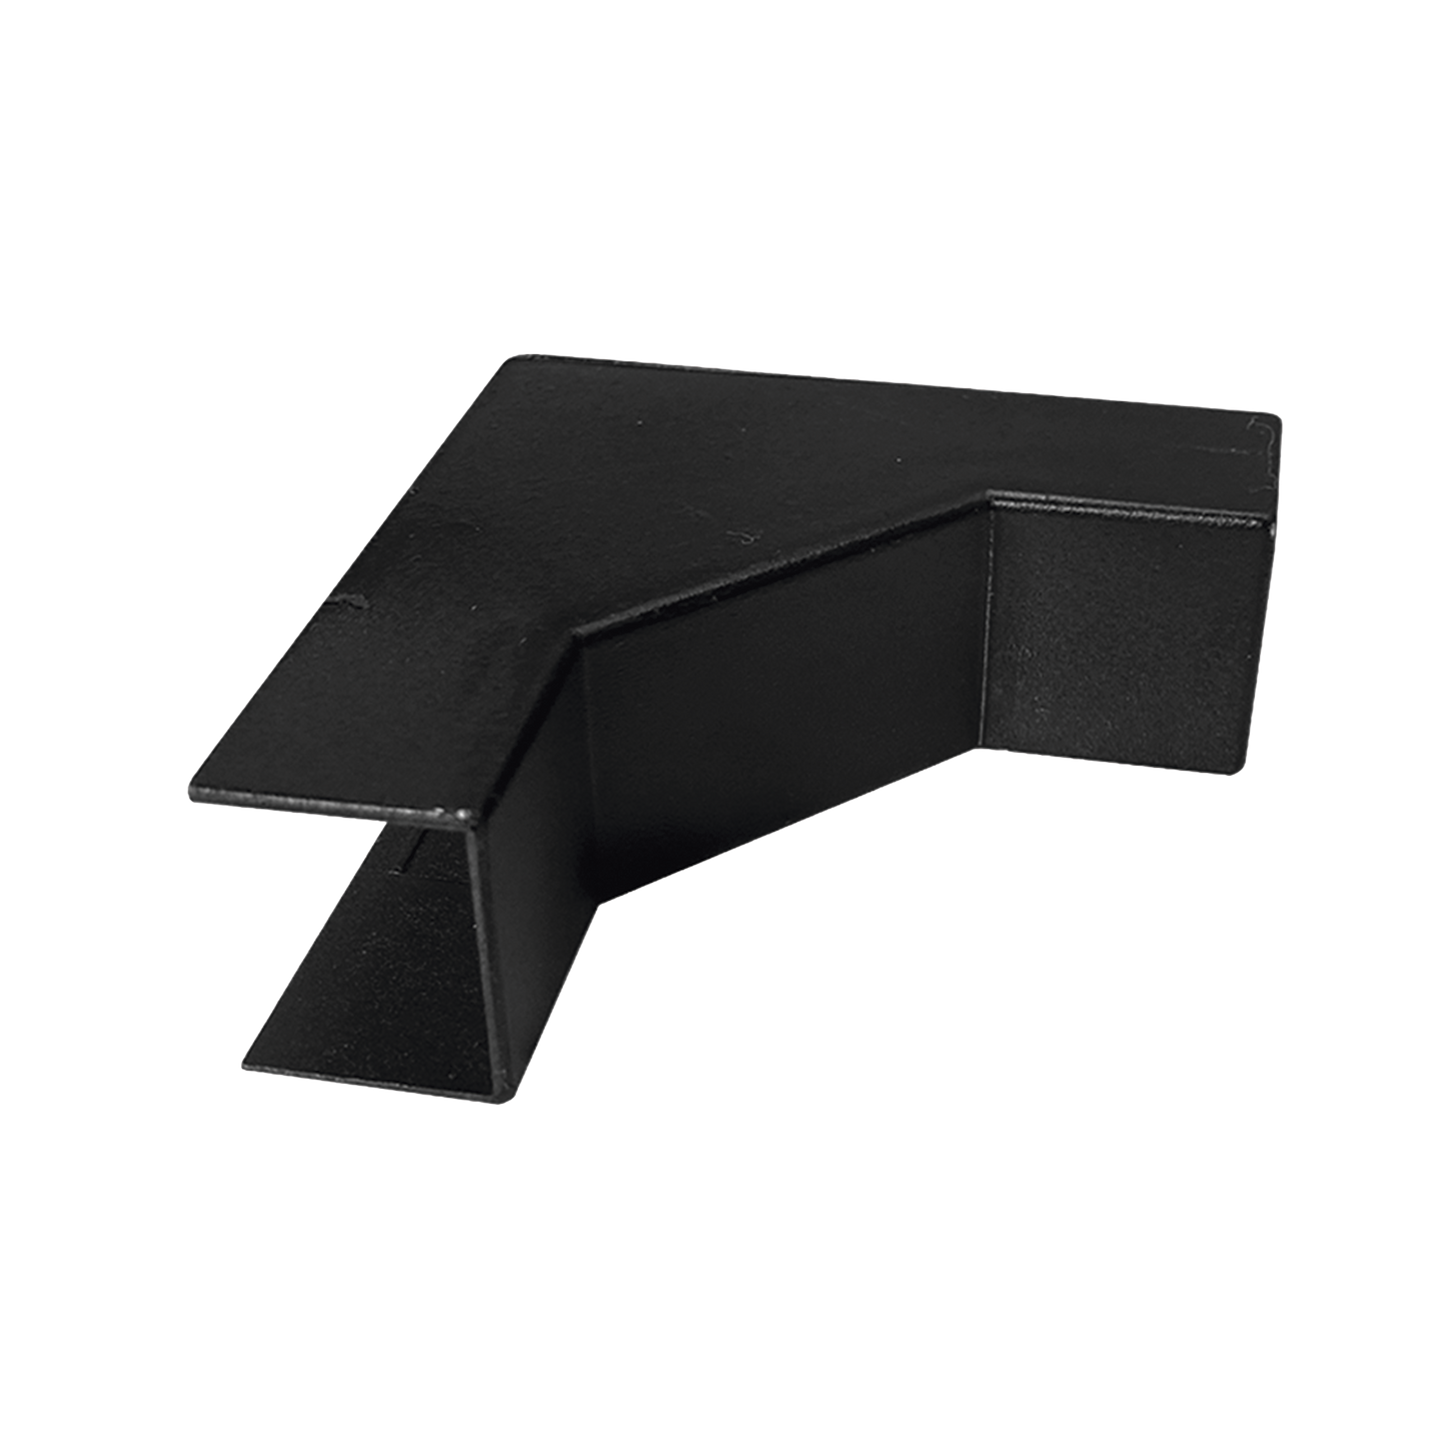 Esquinero Interior Color Negro de PVC Auto Axtinguible, Para Canaleta TMK-1720-N-CC (5220-02003)